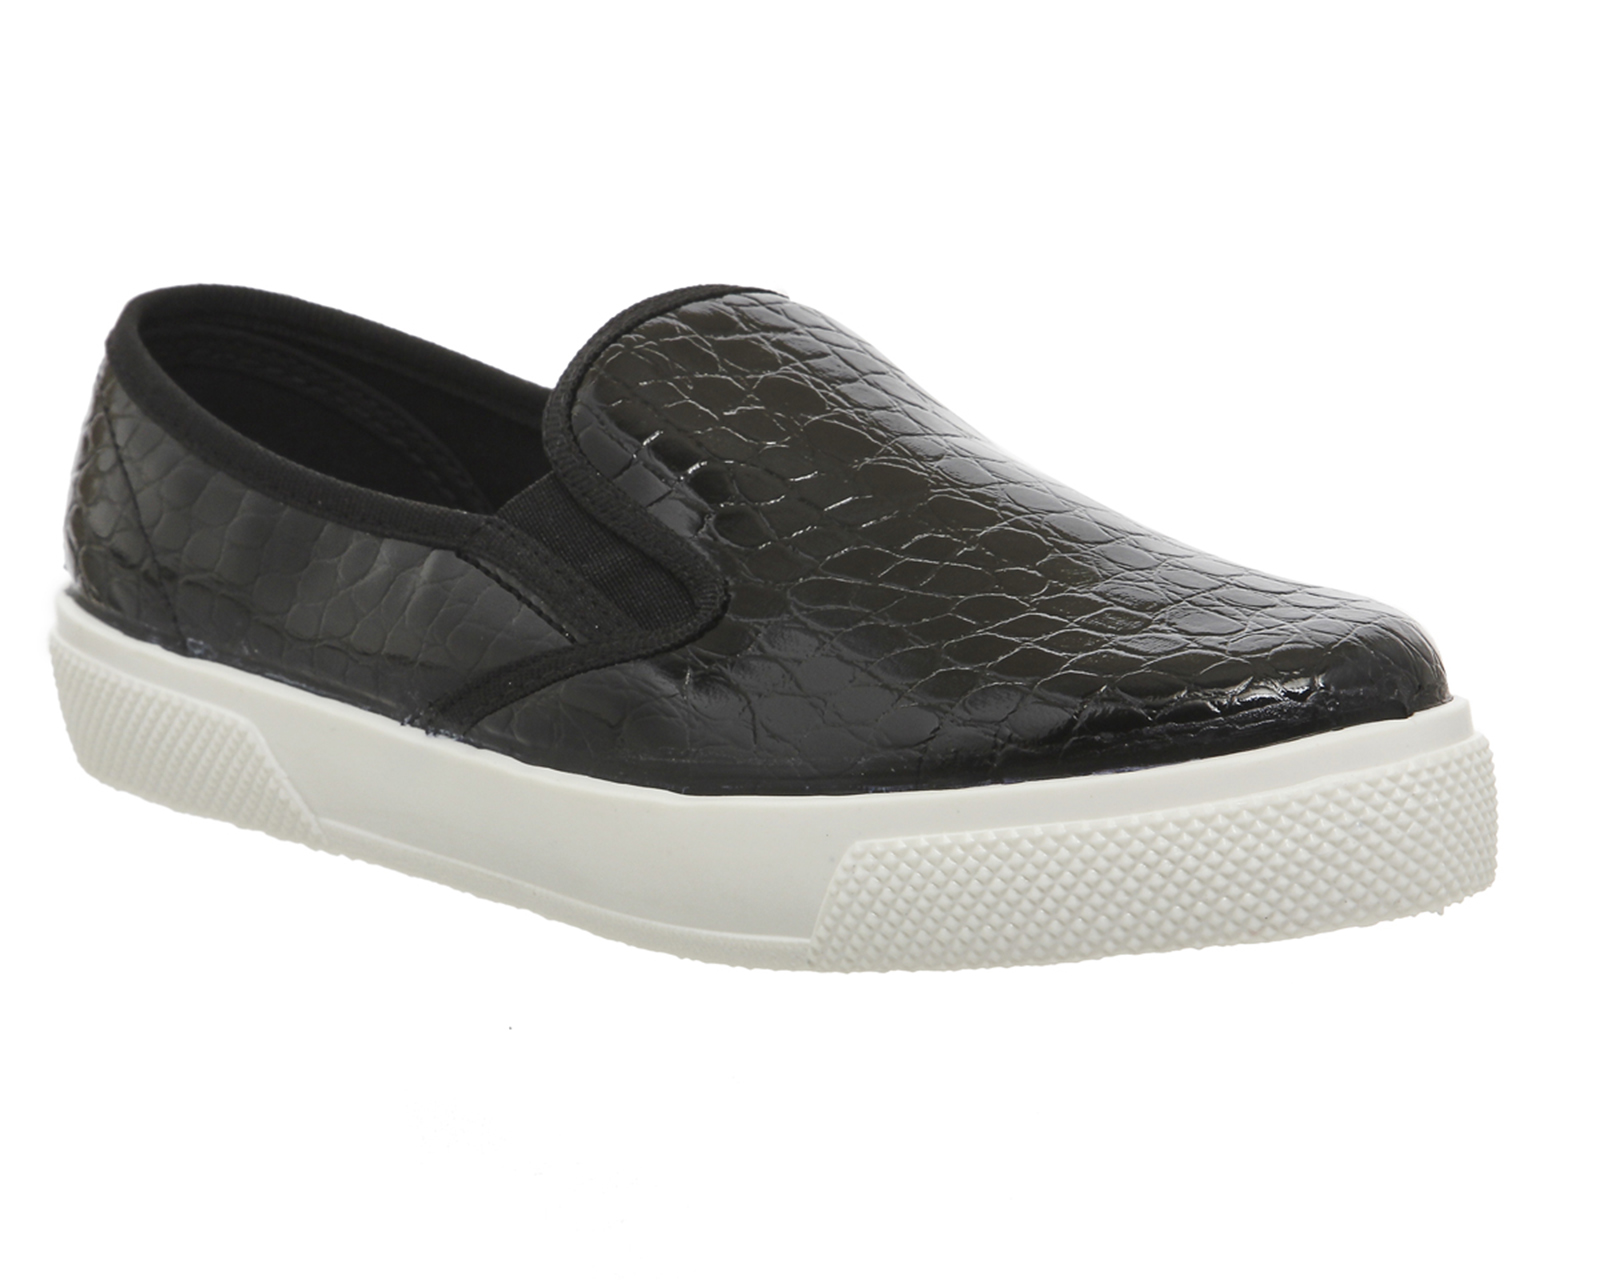 Shoes Black Patent Croc - Flats